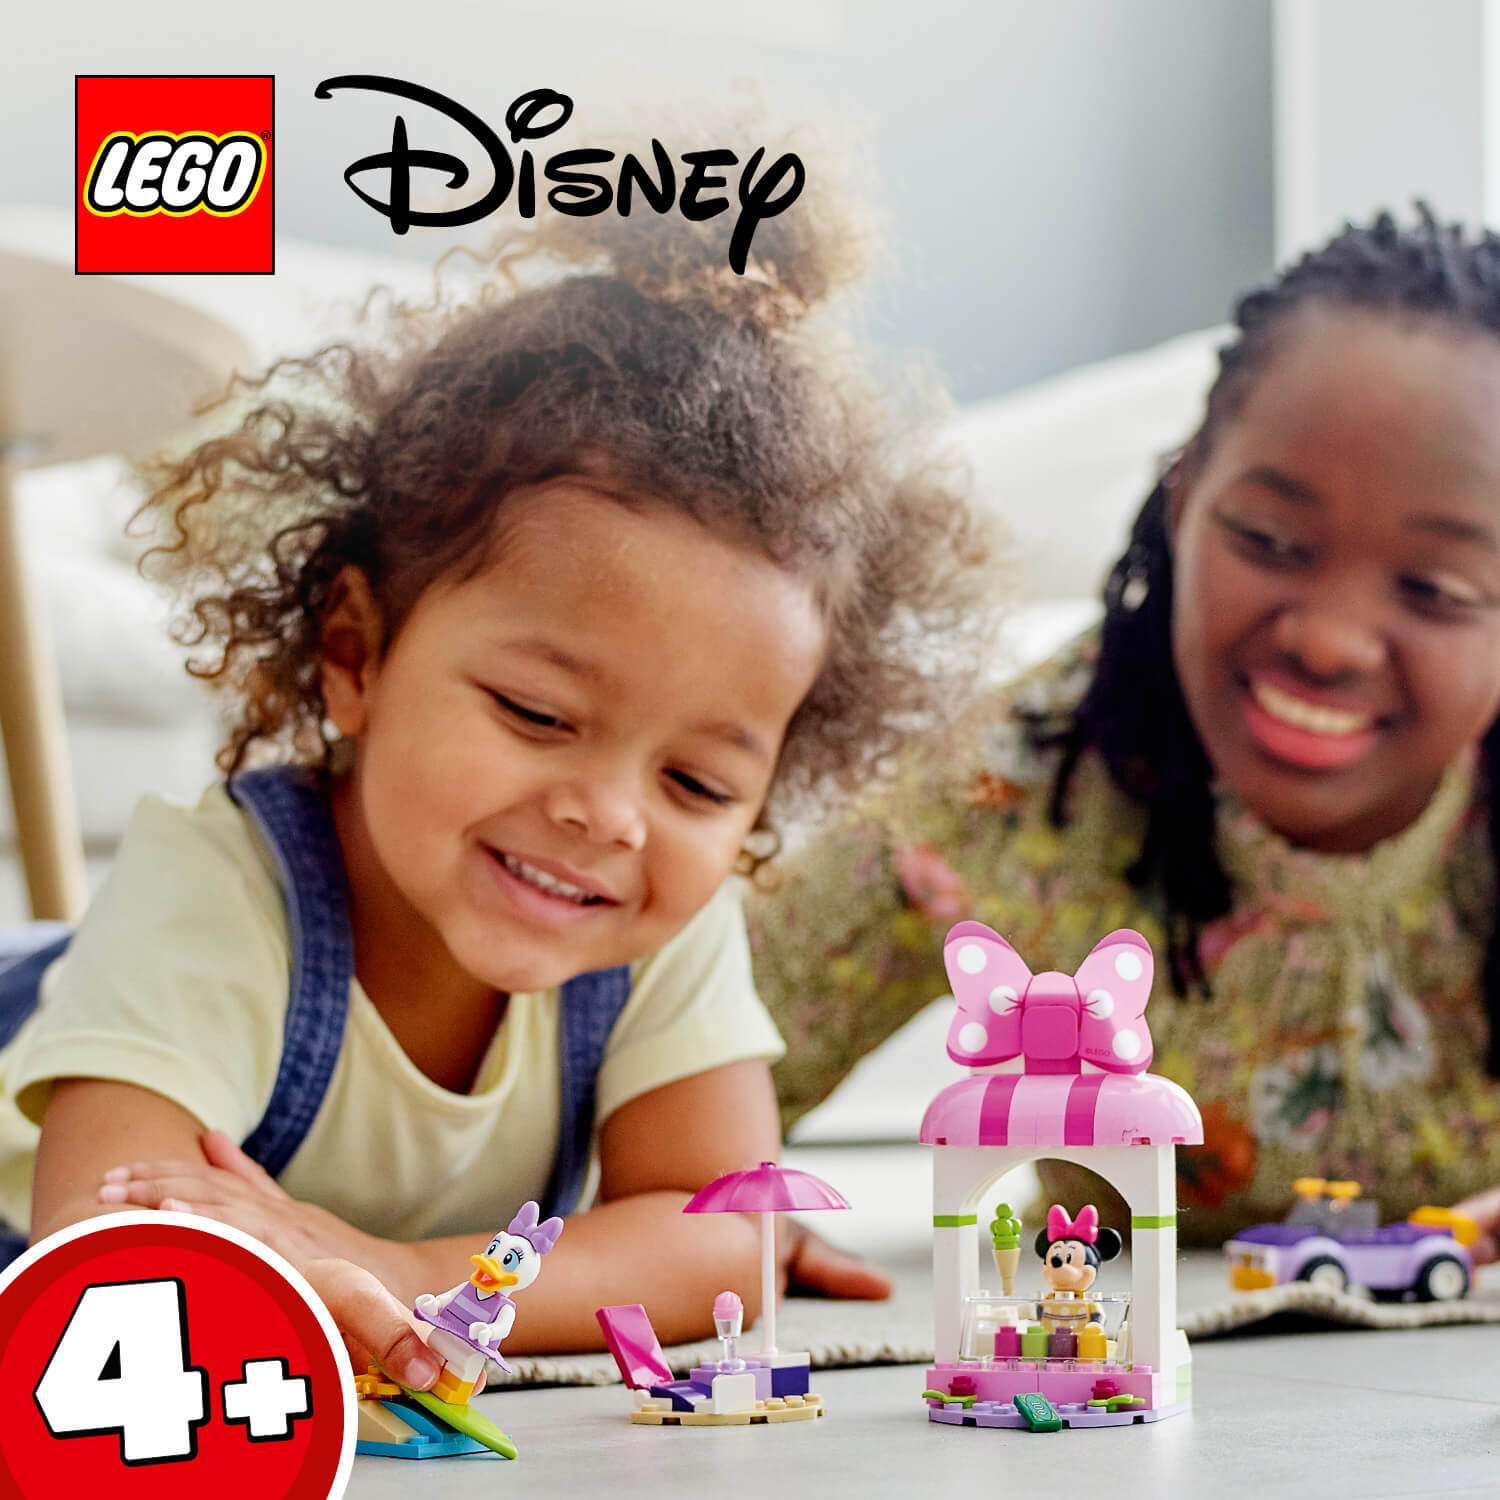 Stavebnice LEGO® ǀ Disney pro děti od 4 let